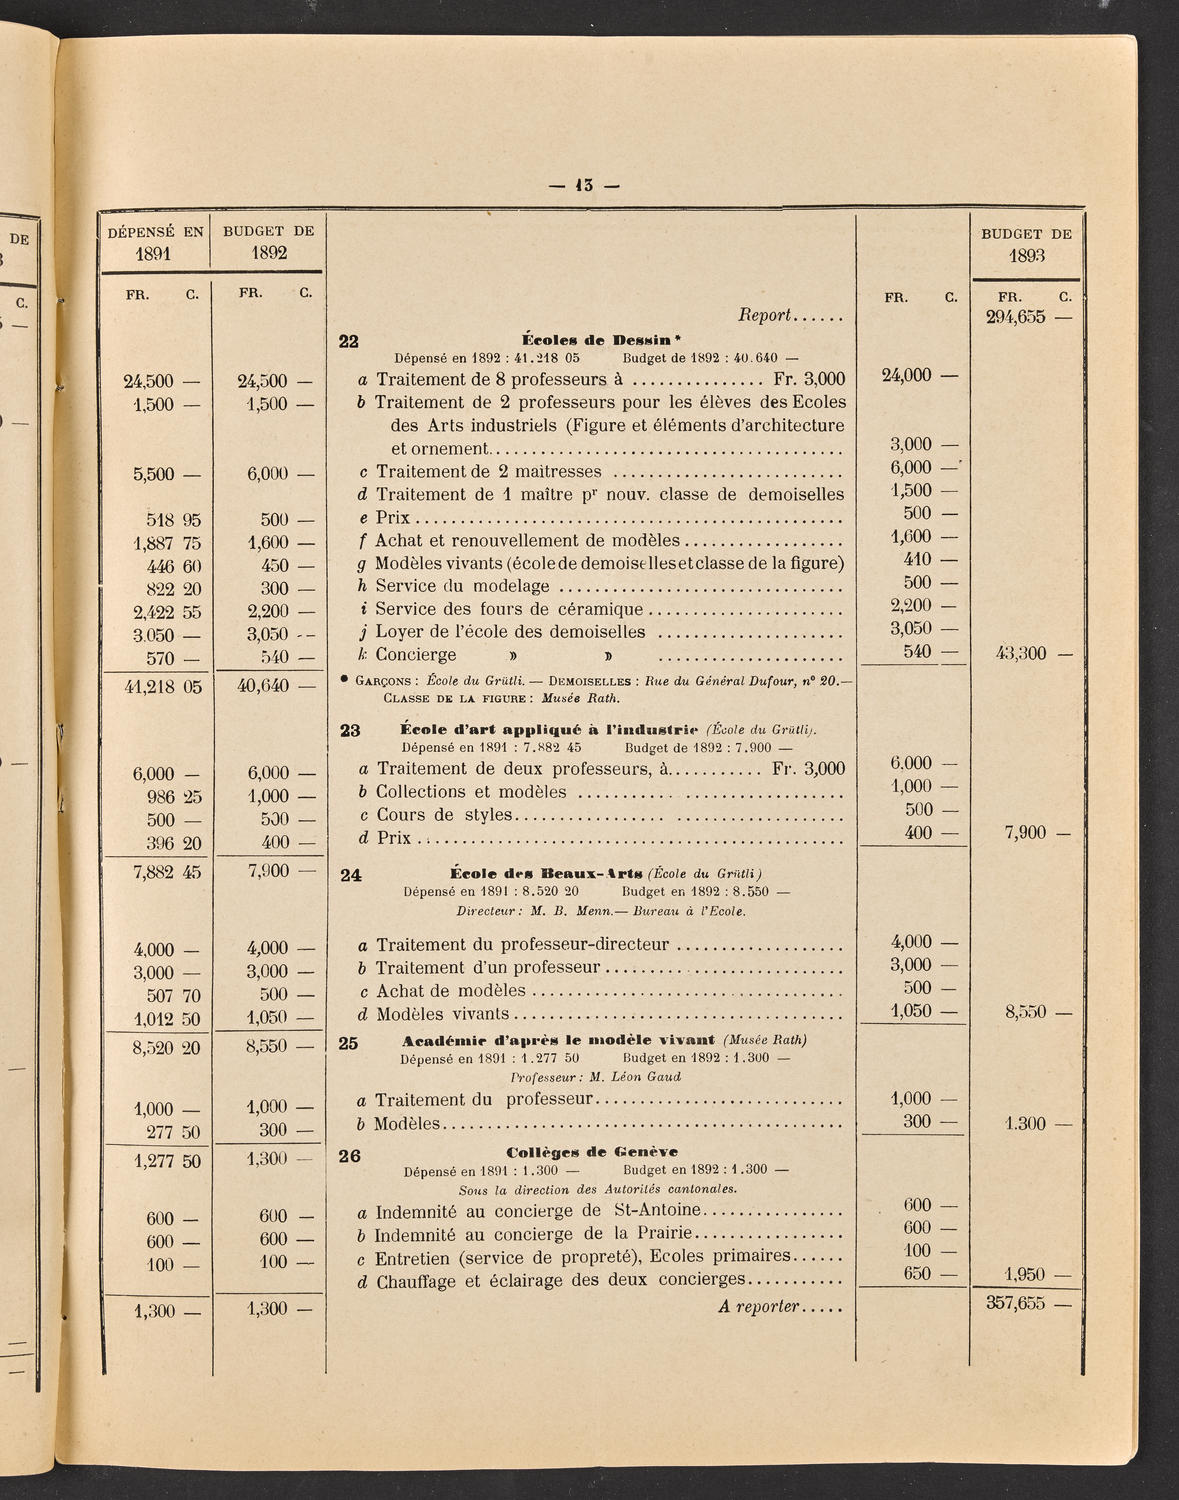 Budget de la Ville de Genève - Exercise de 1893, page 19 of 32